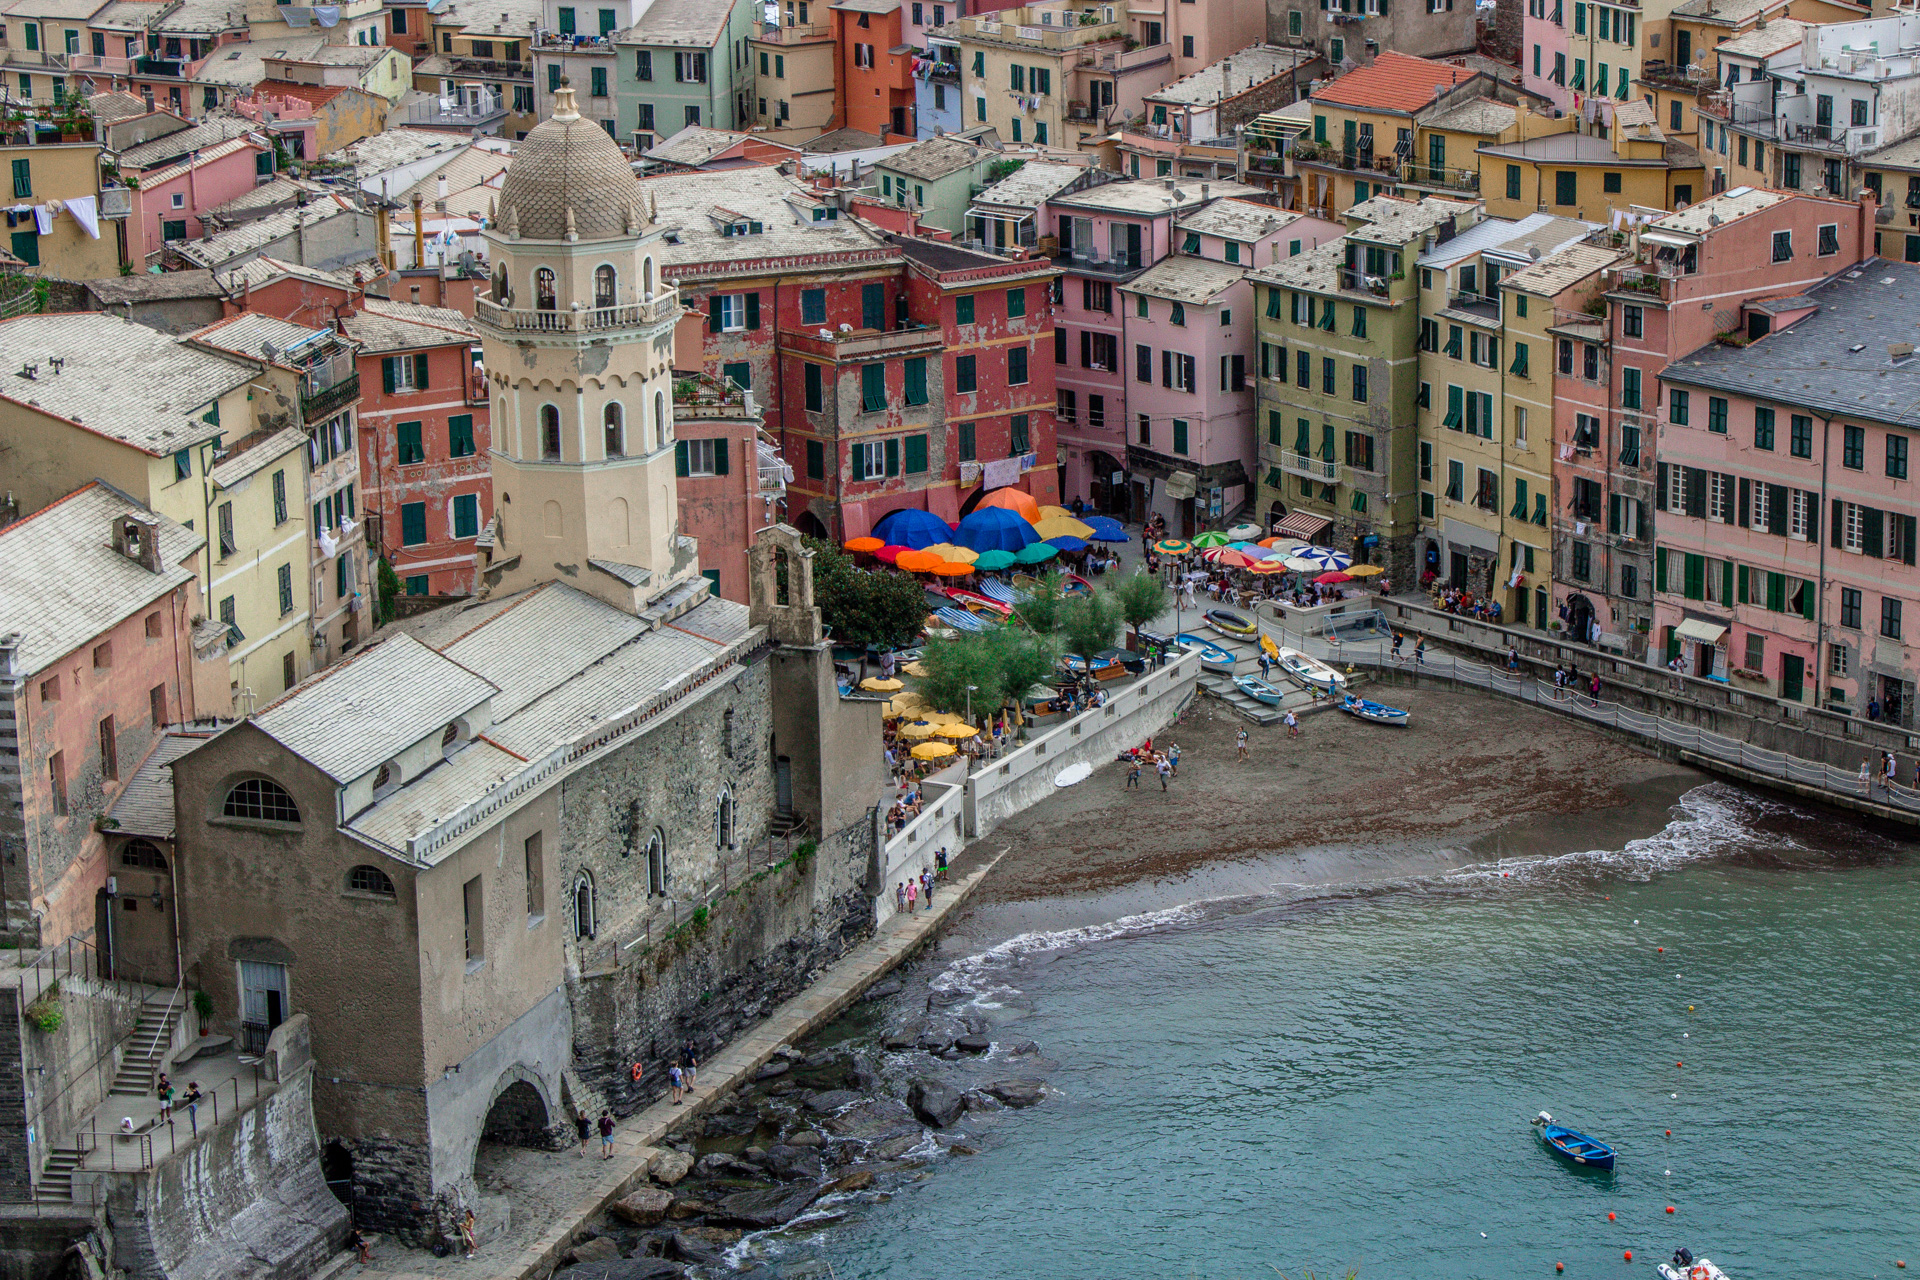 Vernazza - Cinque Terre.
Die kleine Piazza am Meer mit typisch ligurischen Häusern und bunten Sonnenschirmen faszinieren.